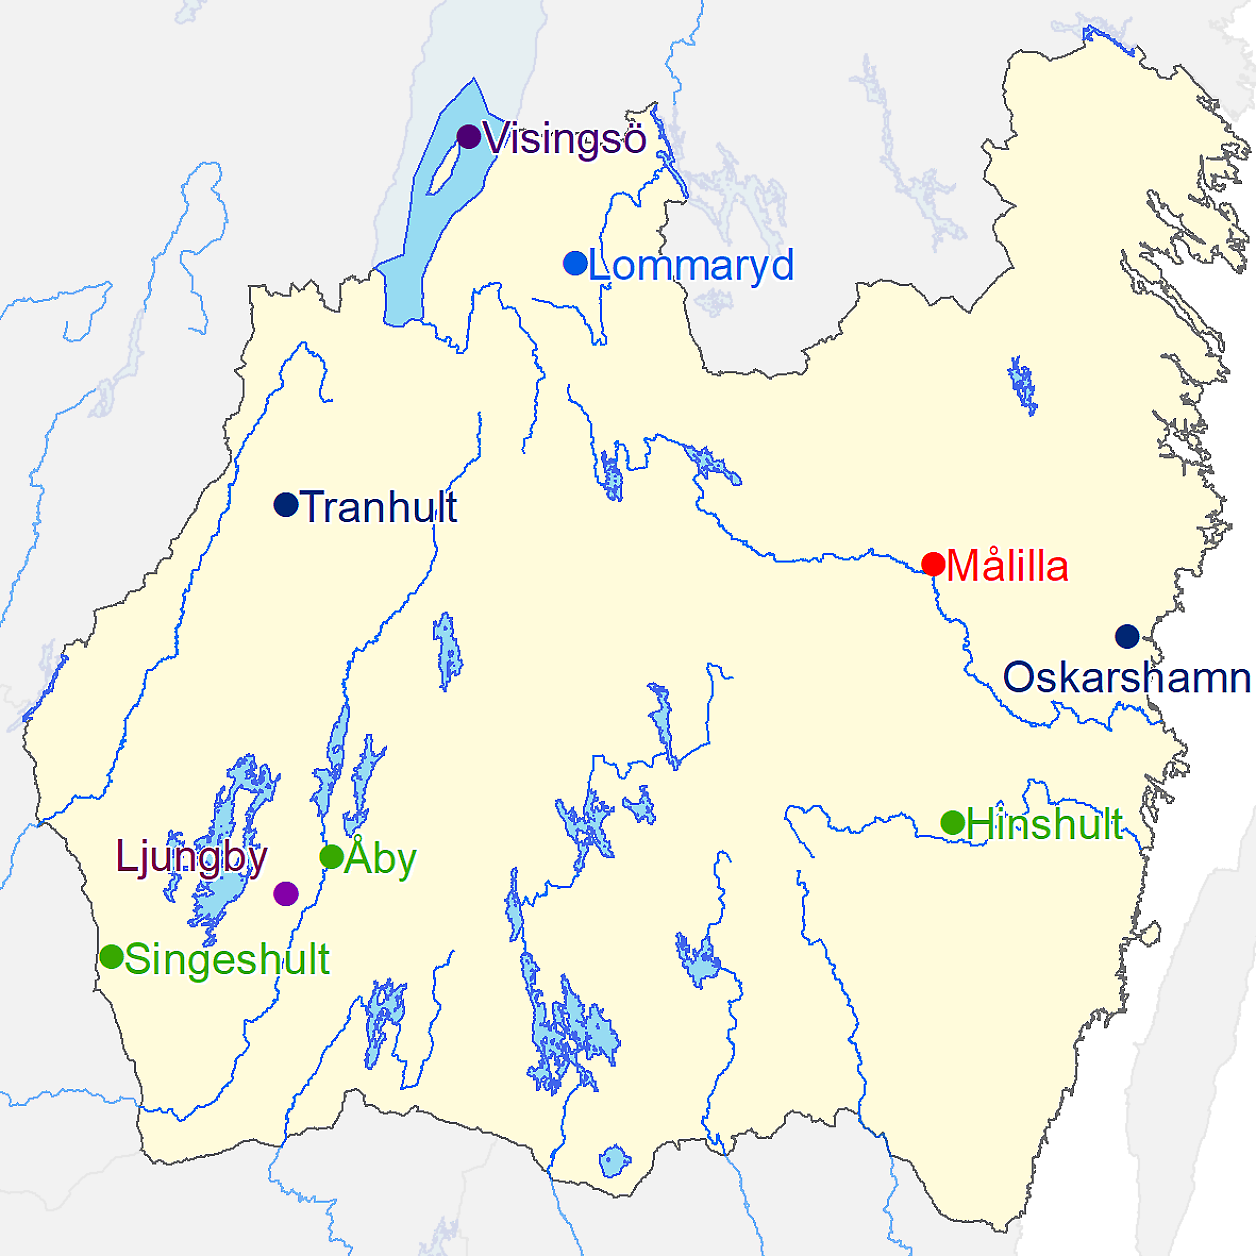 Småland : Småland, landskap (province), southern sweden, extending from